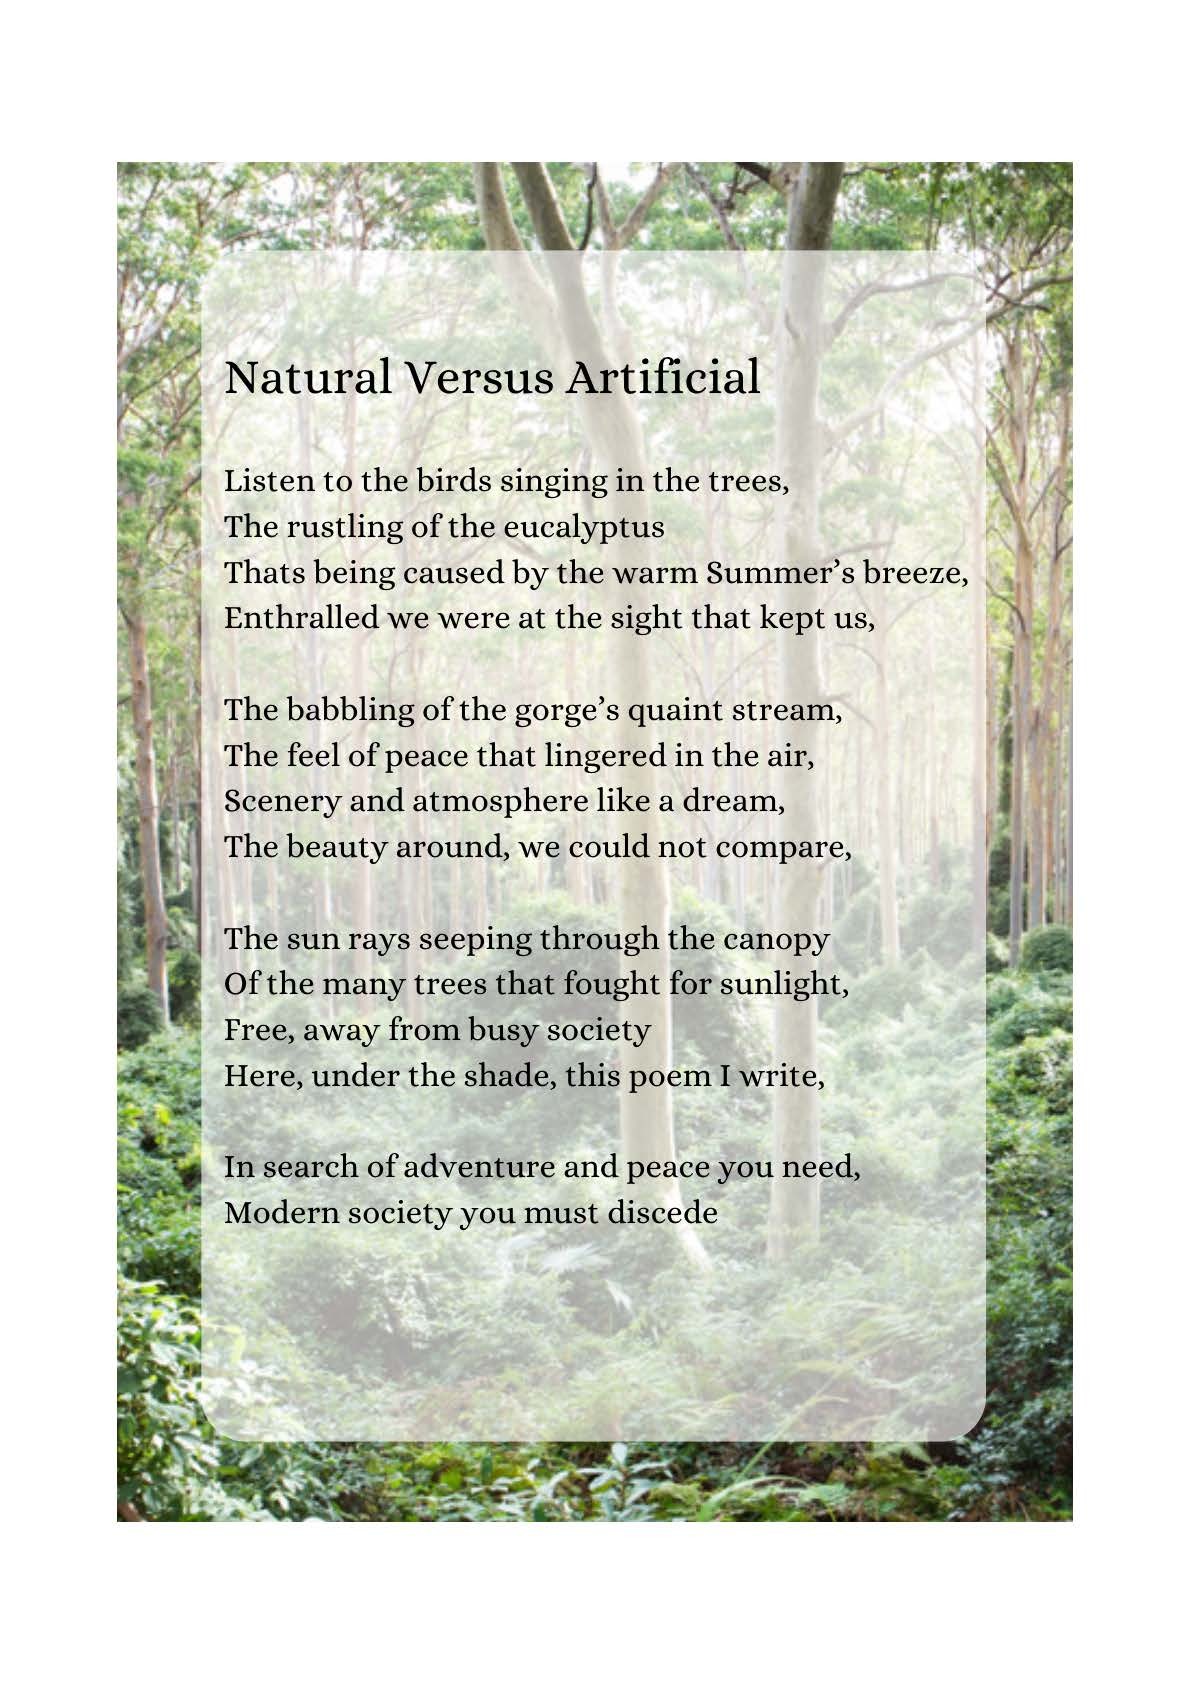 nature versus artificial